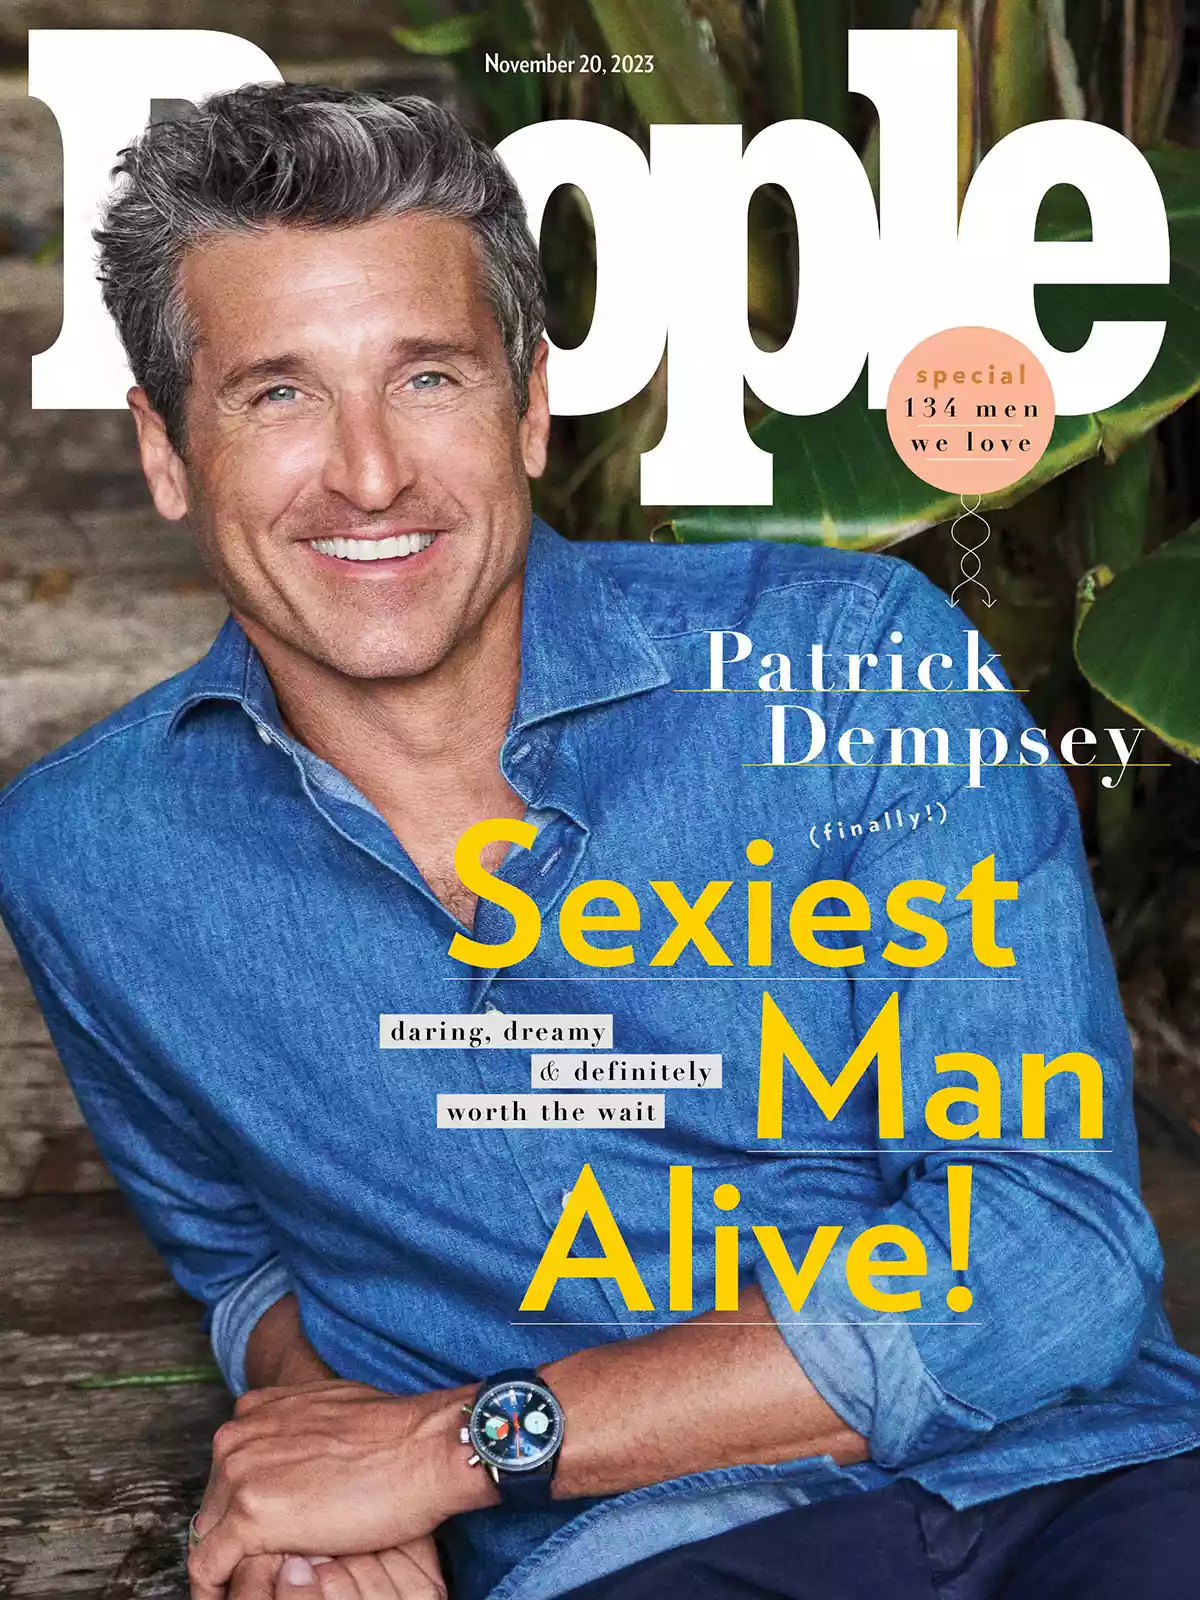 Назван самый сексуальный мужчина 2021 года по версии журнала People